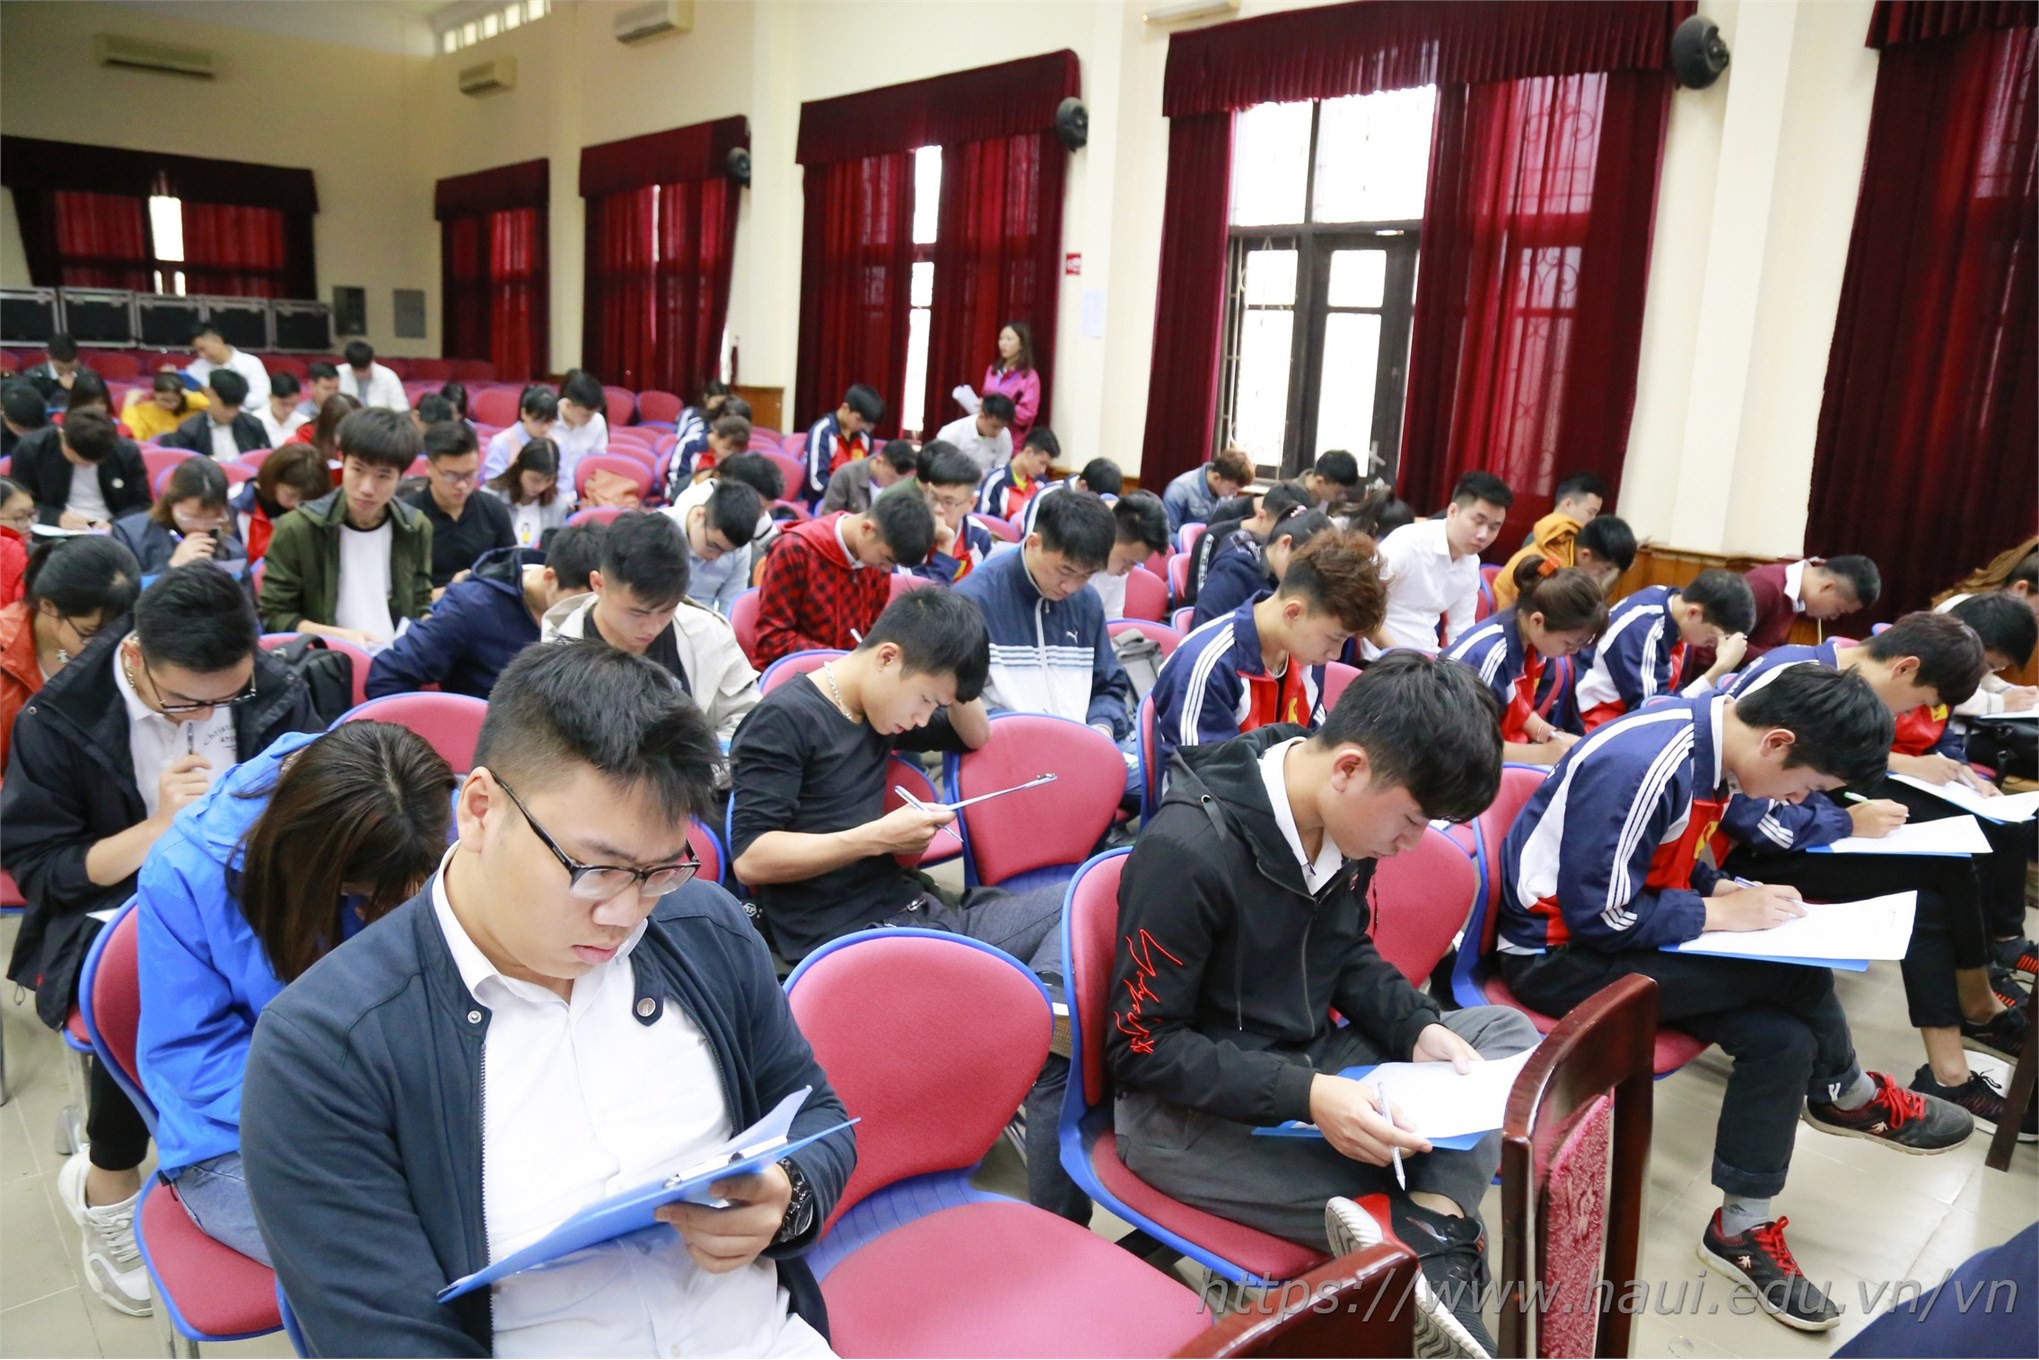 Hàng trăm cơ hội việc làm cho sinh viên HaUI tại Tập đoàn KHKT Hồng Hải